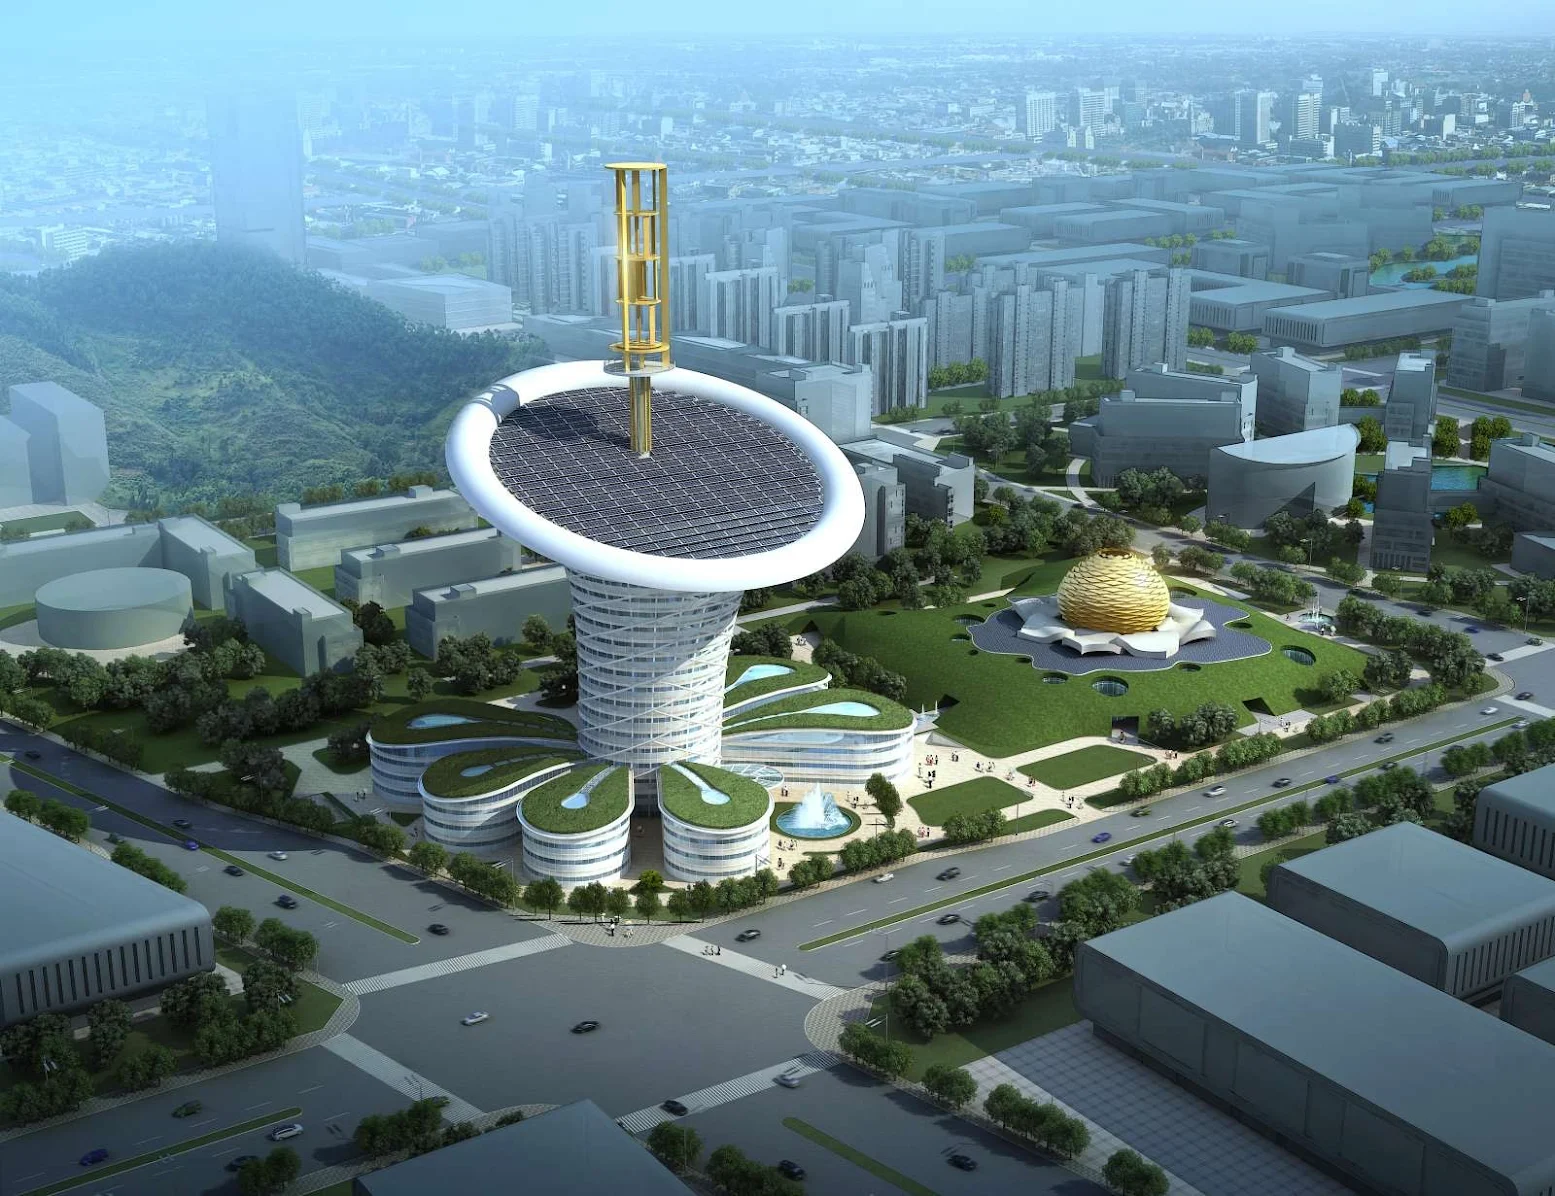 Wuhan Energy Centre by Grontmij and Soeters Van